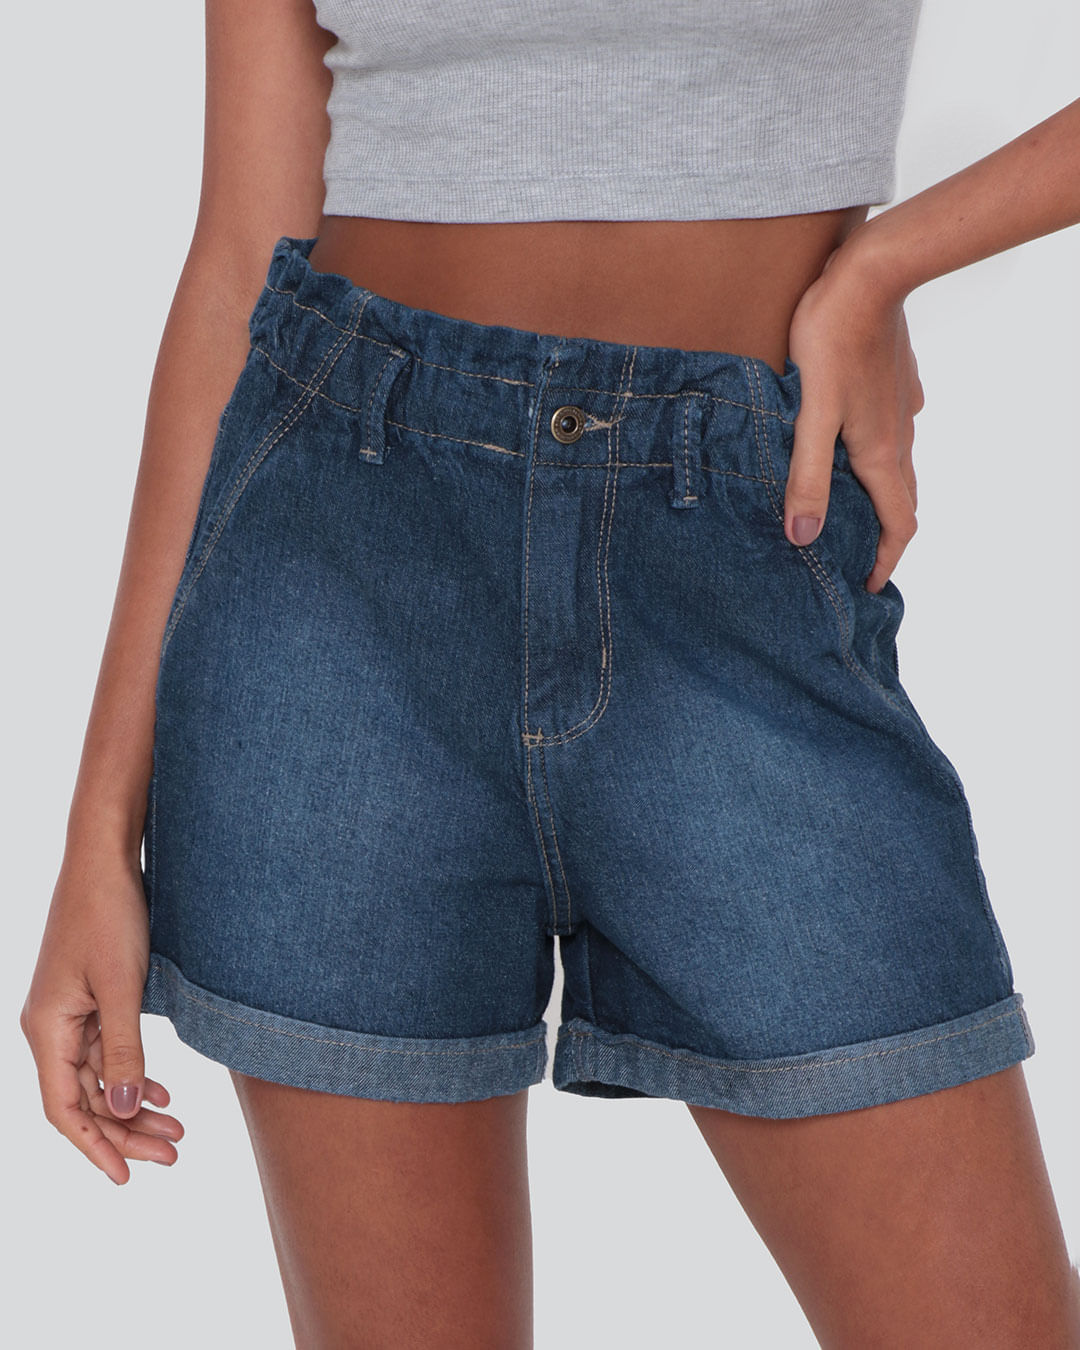 Short-Jeans-Feminino-Clochard-Azul-Medio